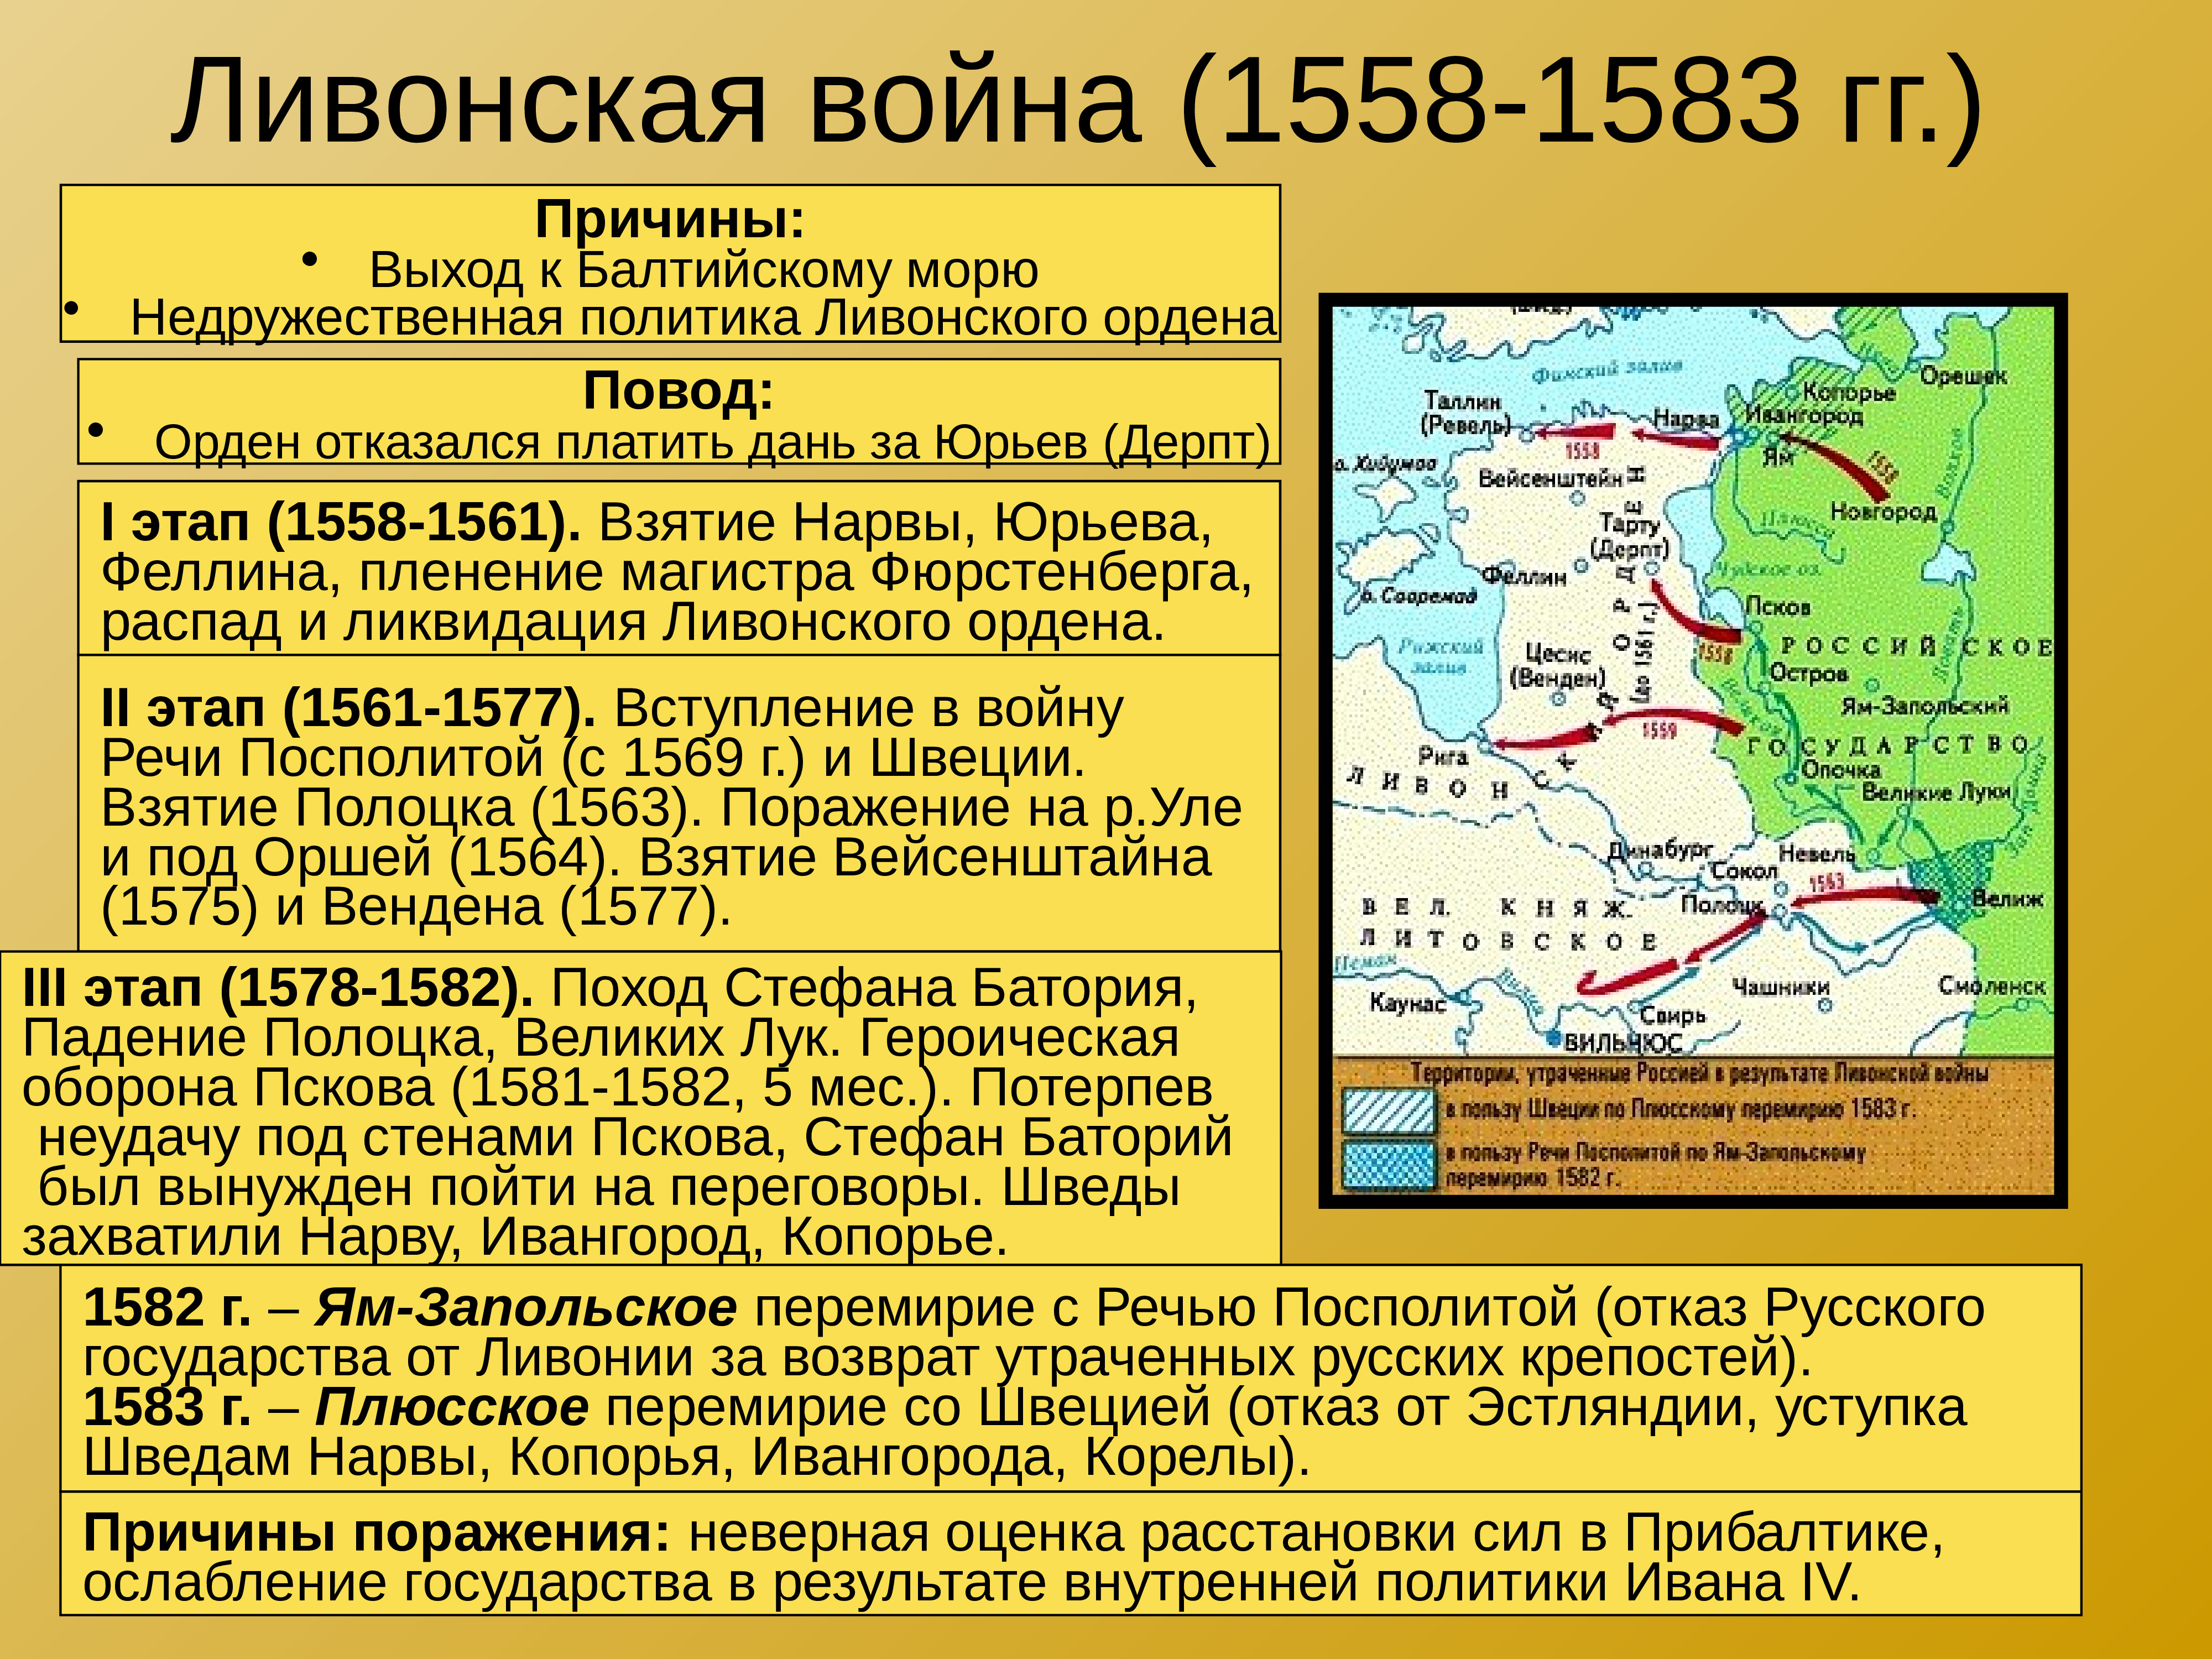 Ям запольский договор с речью посполитой. Участники русско Ливонской войны 1558-1583.